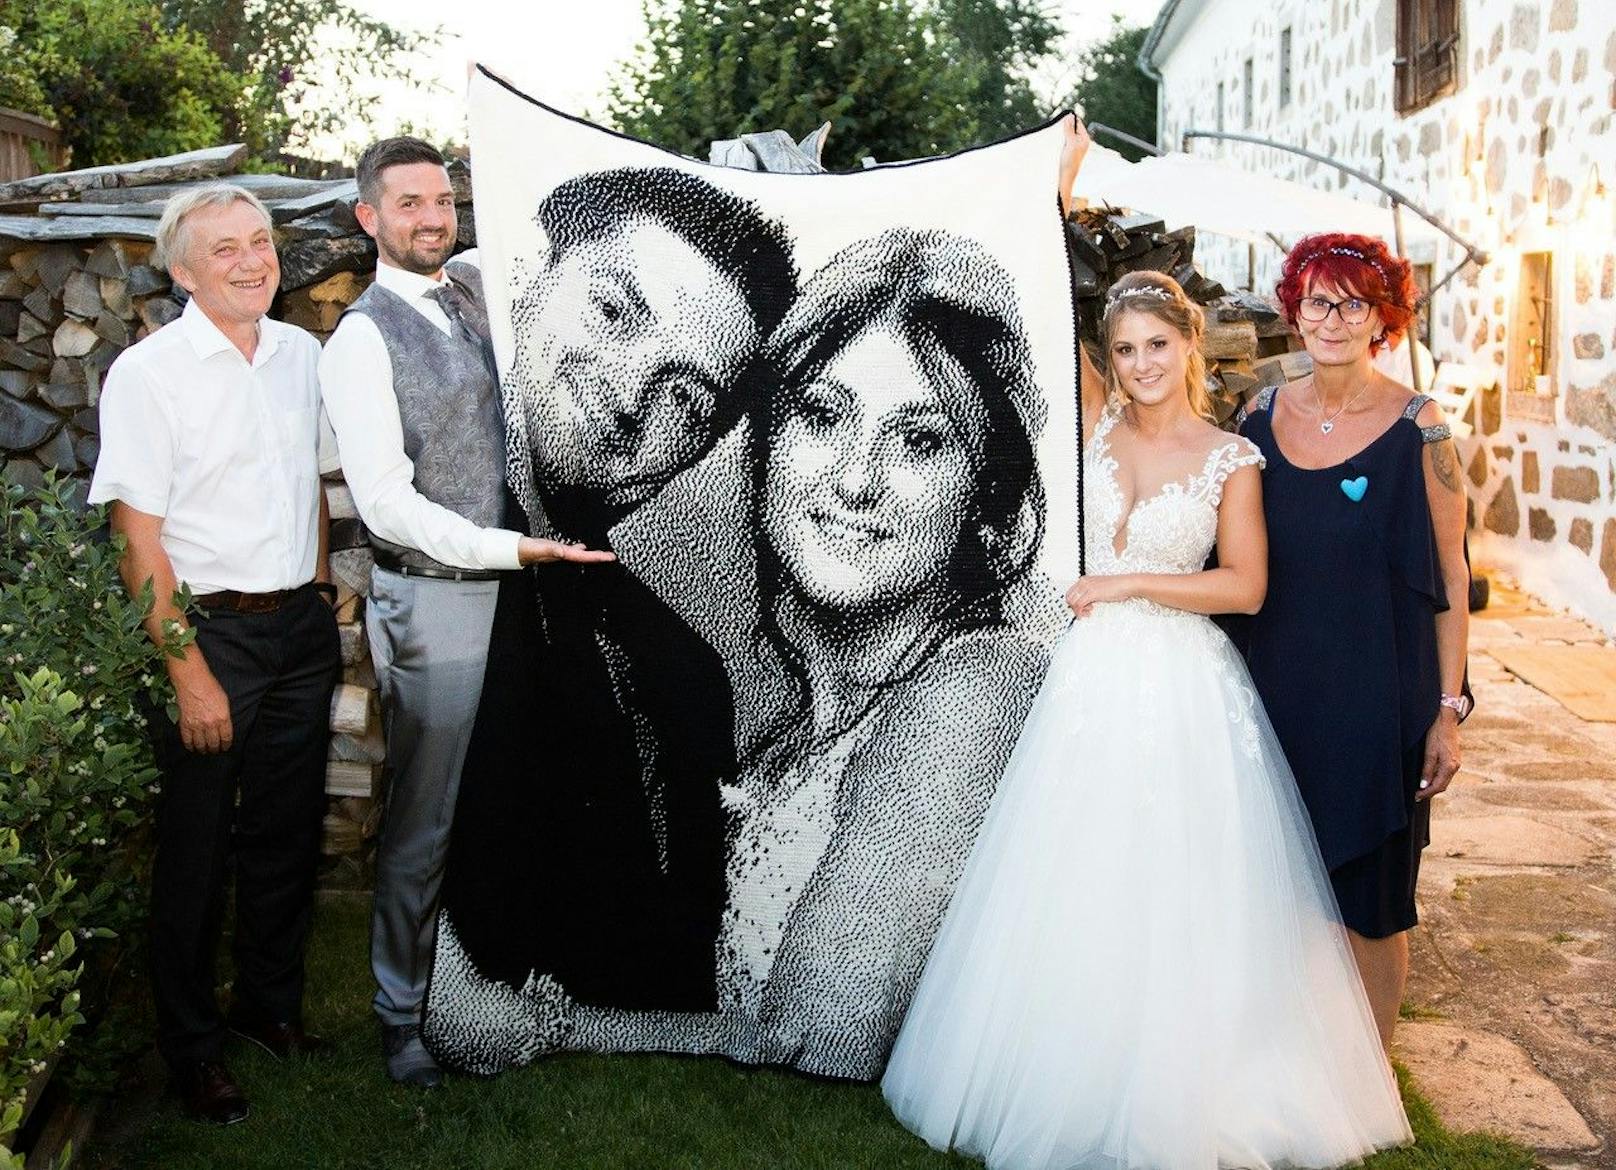 Brautmama Sabine Neunteufel häkelte ein Portrait des Ehepaares auf einer riesigen Decke.